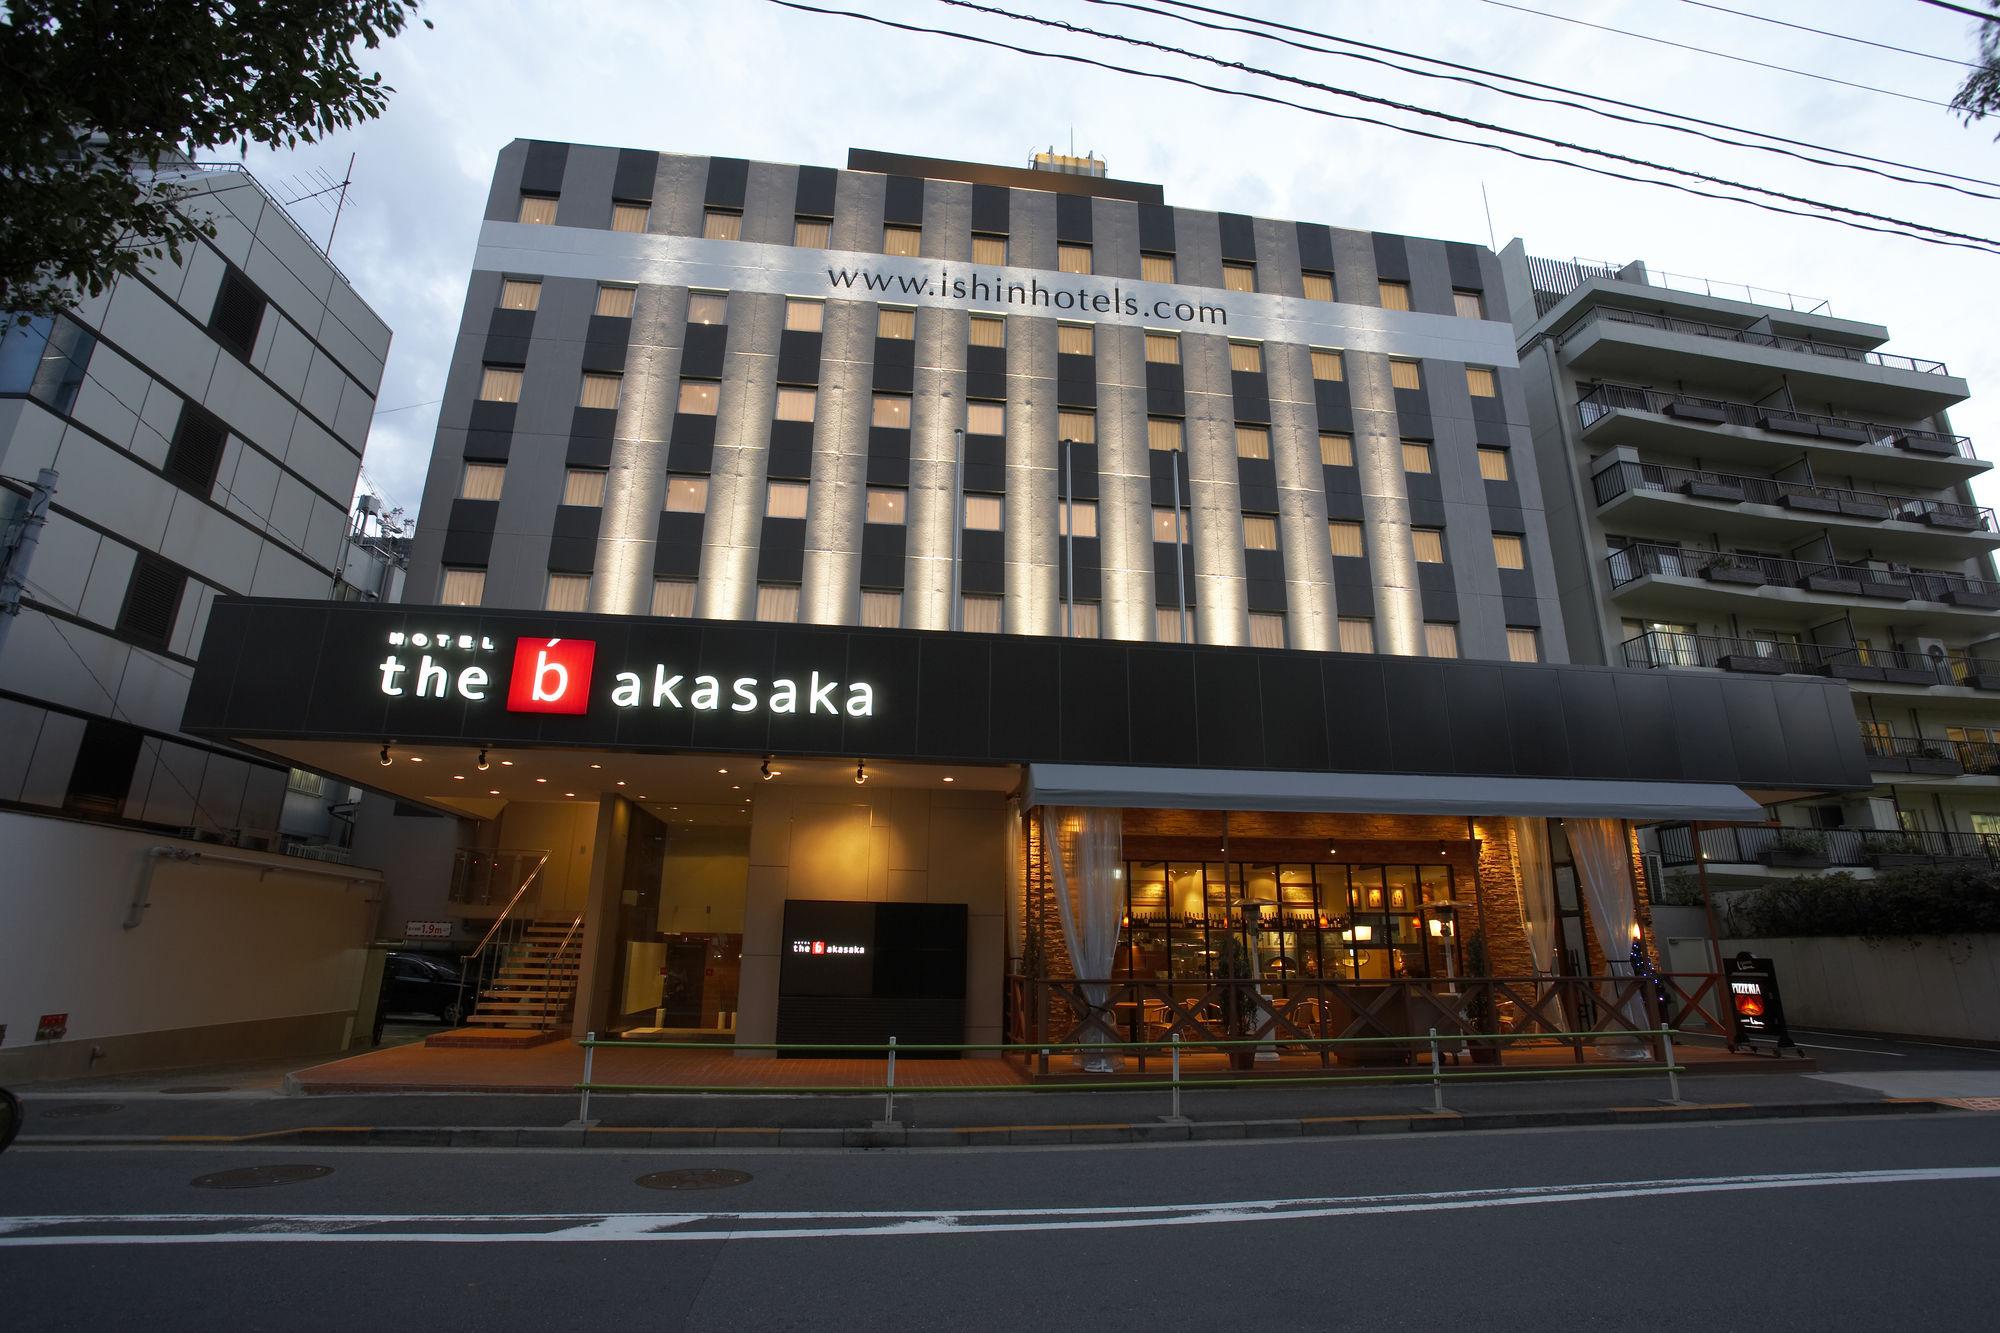 Vista da fachada the b akasaka